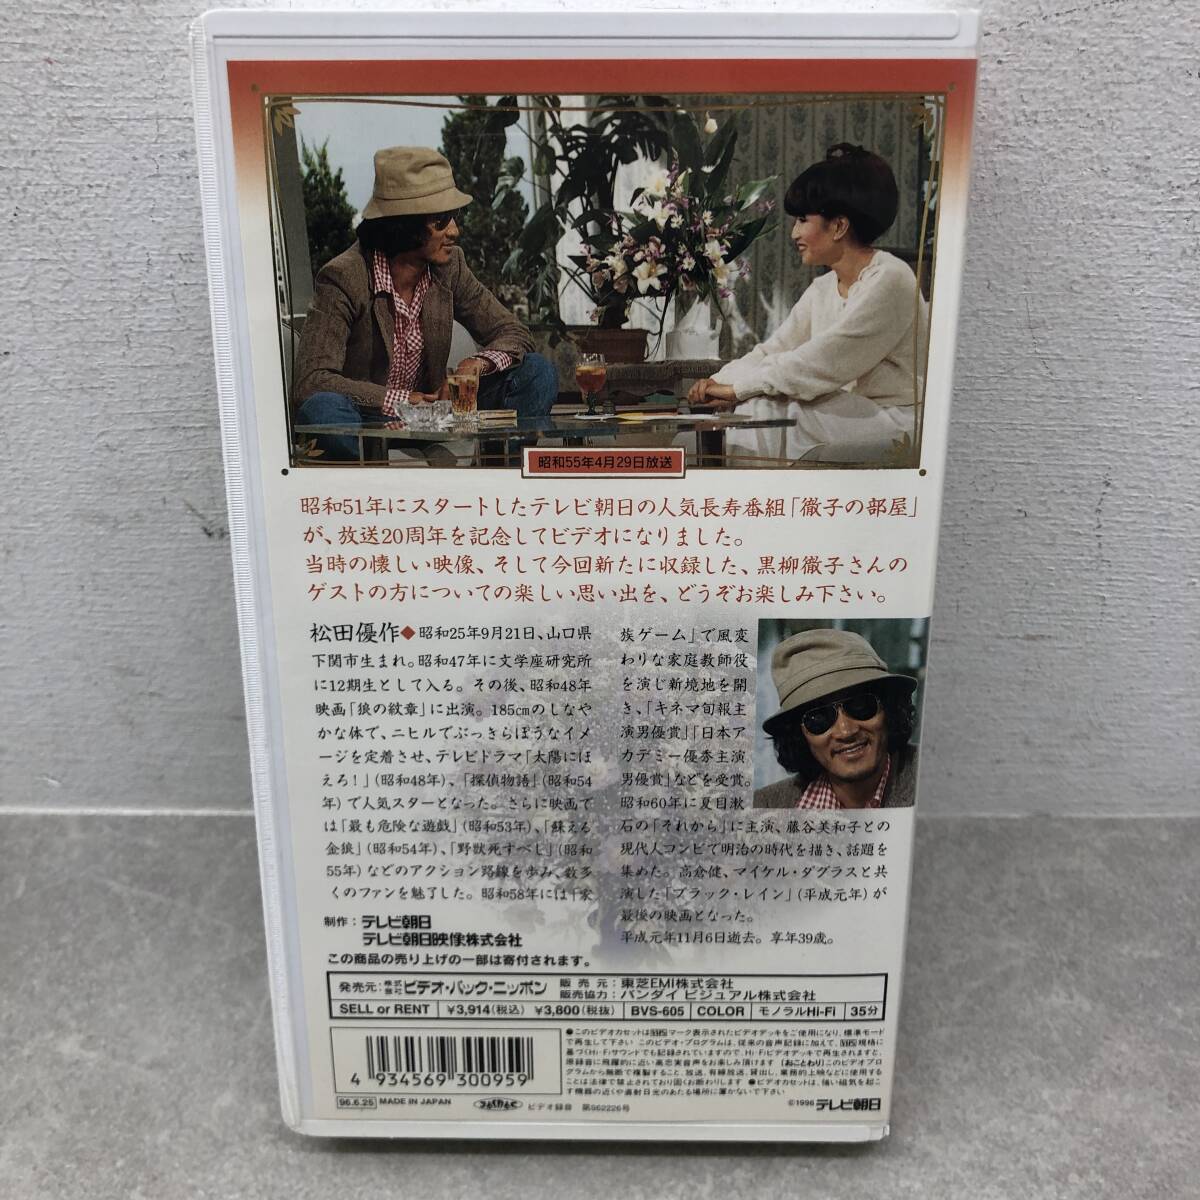 030 A) * текущее состояние * Junk * VHS радиовещание 20 anniversary commemoration ... часть магазин гость выступление / Matsuda Yusaku видеолента 